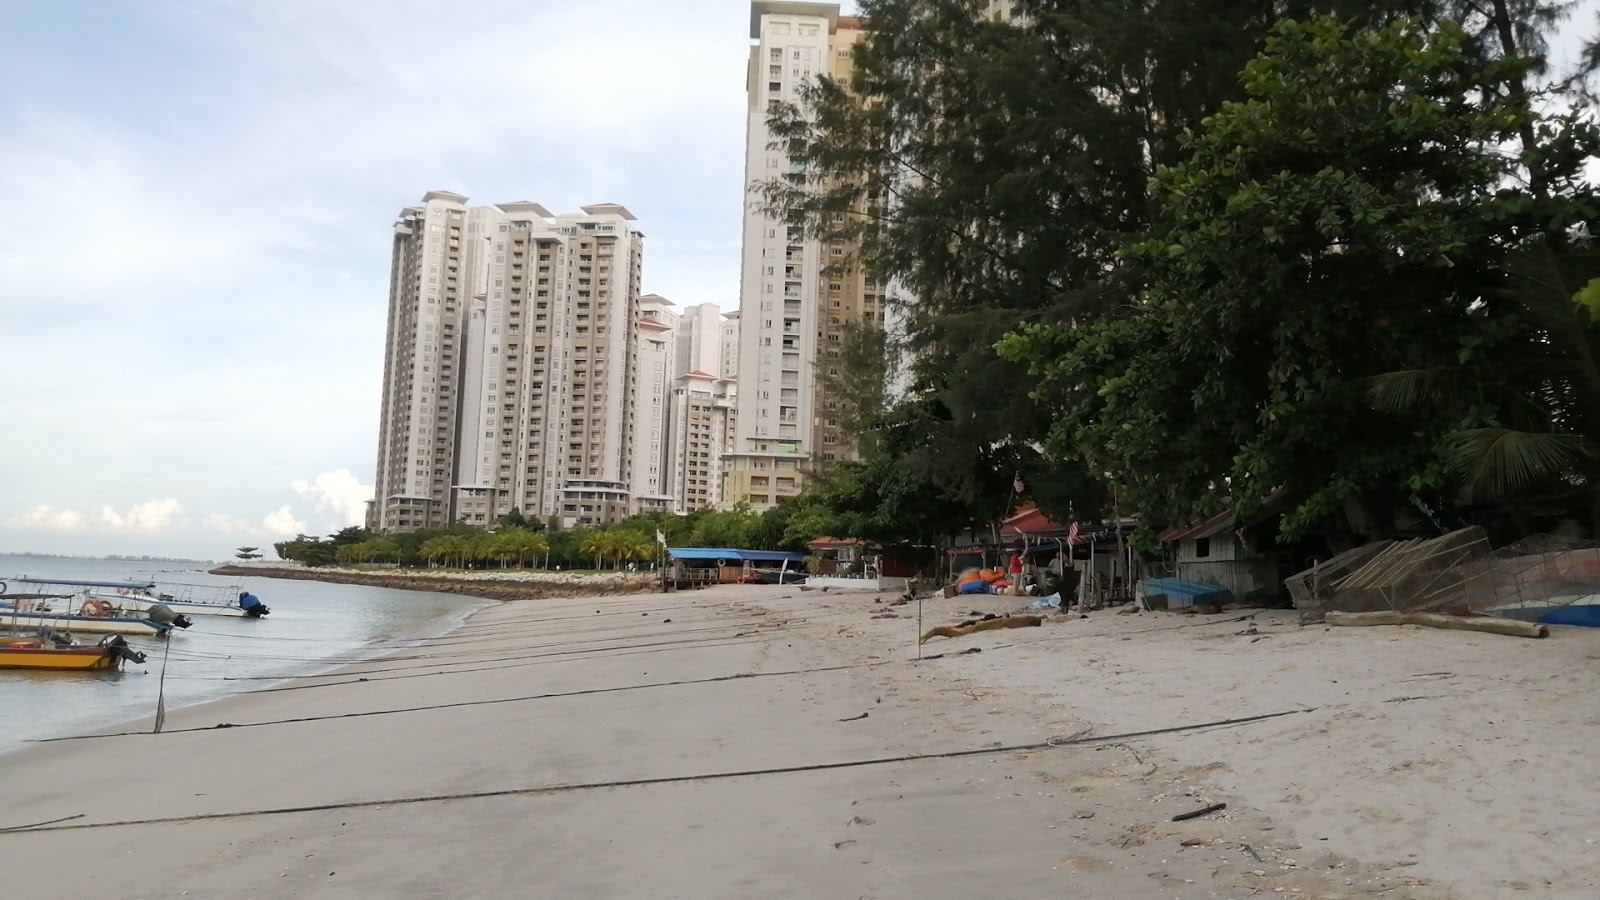 Tanjung Tokong Beach'in fotoğrafı çok temiz temizlik seviyesi ile